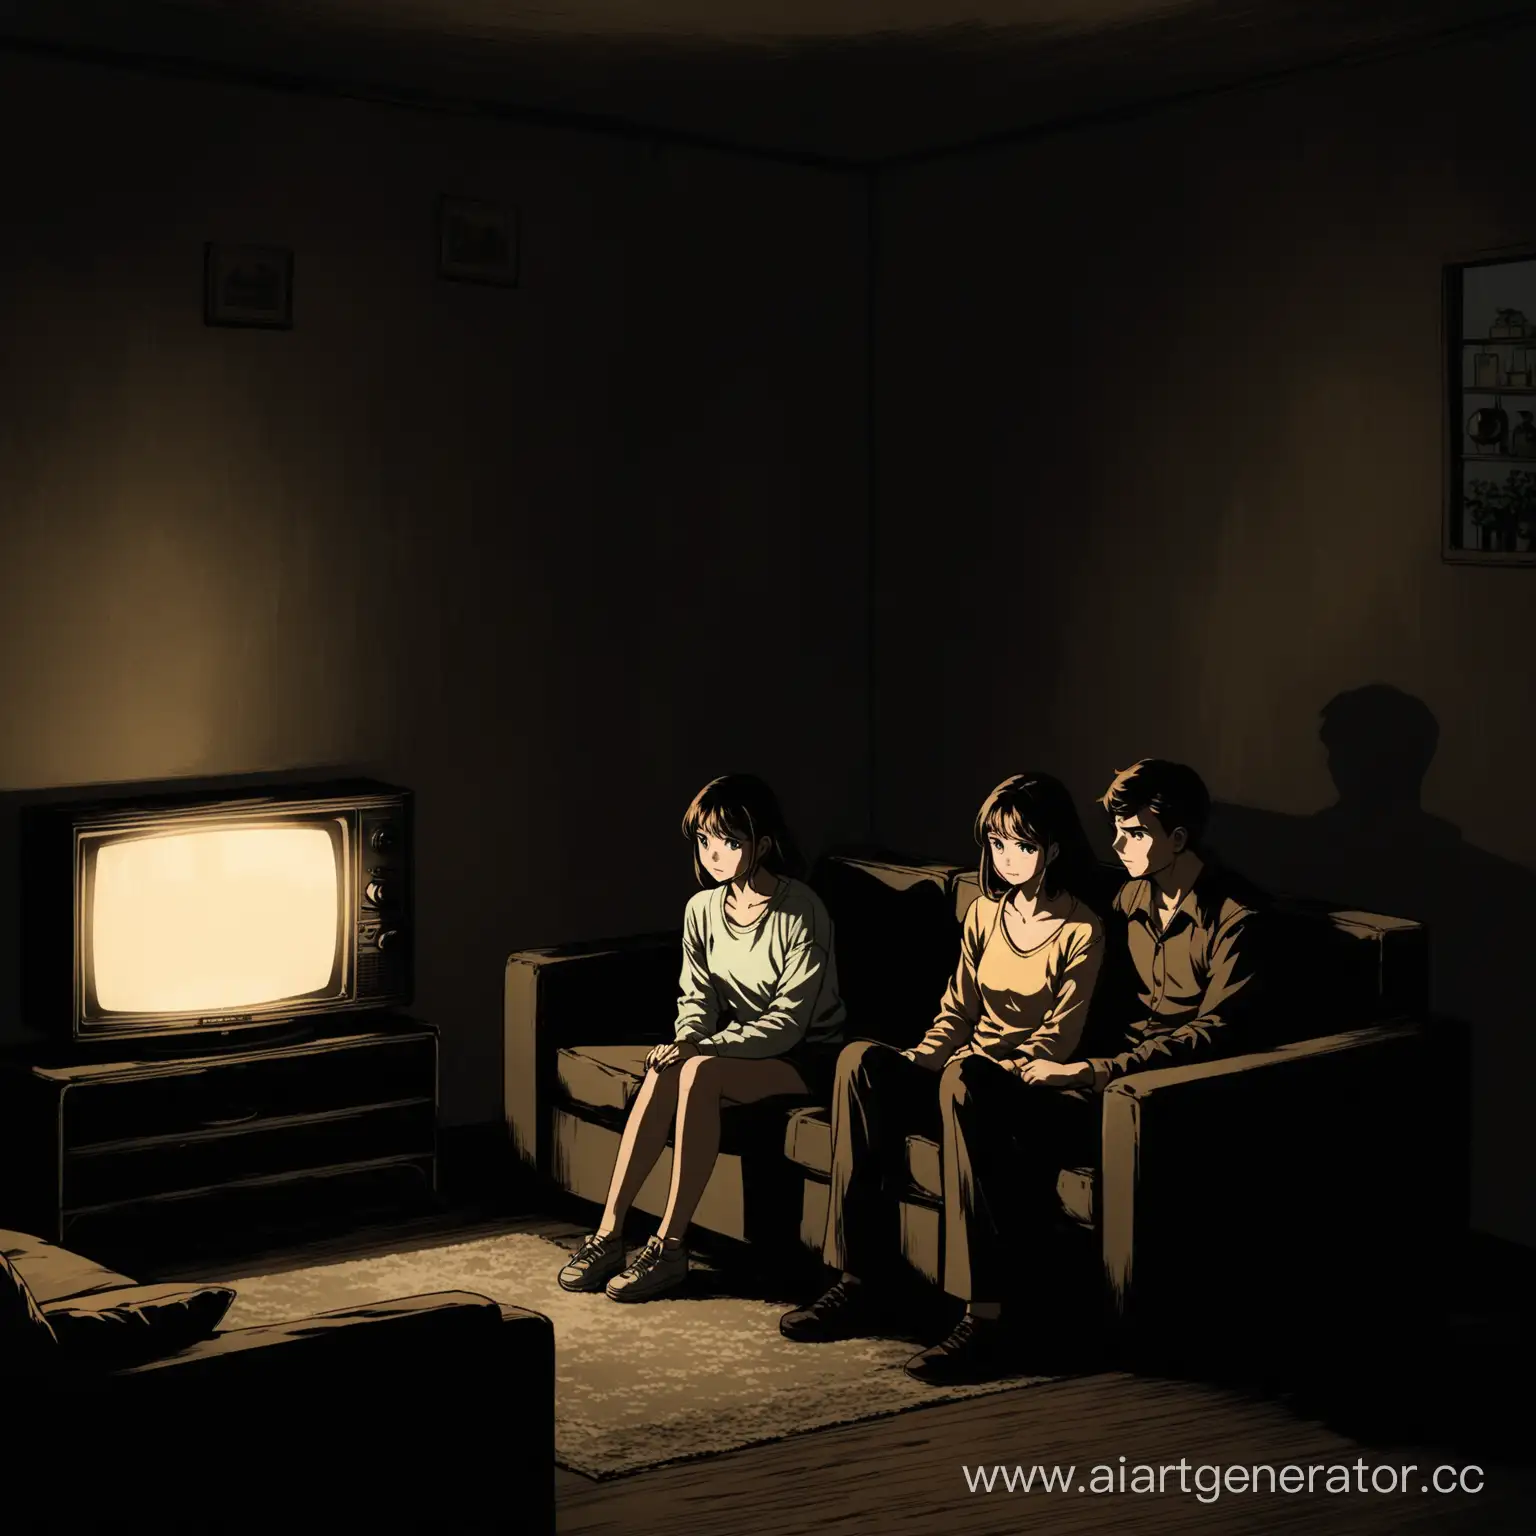 молодая пара смотрит аниме в сторону зрителя на старом телевизоре который стоит в правом углу изображения молодая пара сидит на диване в старой квартире ссср в полной темноте 